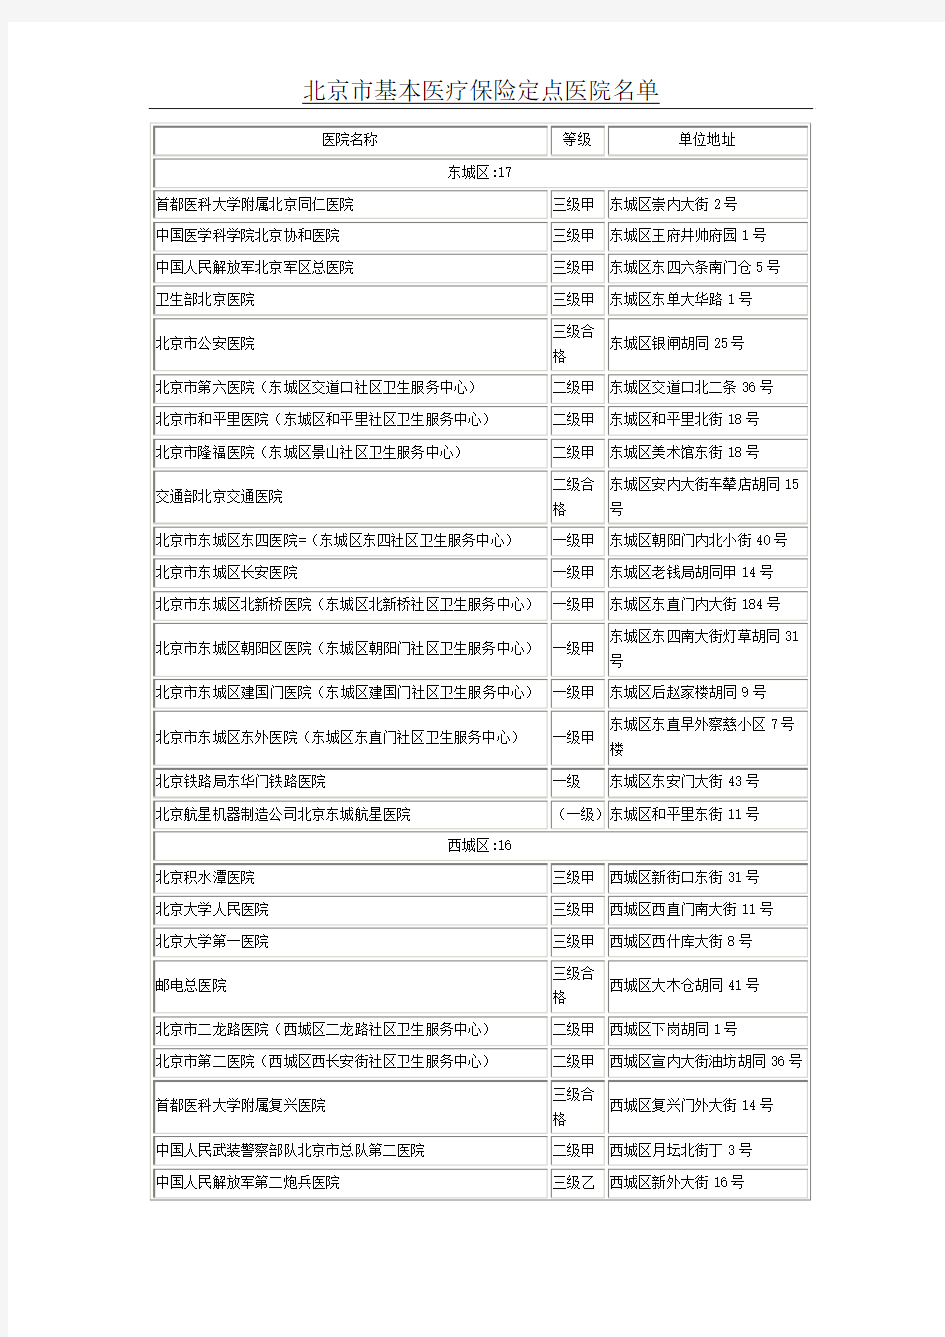 北京市基本医疗保险定点医院名单